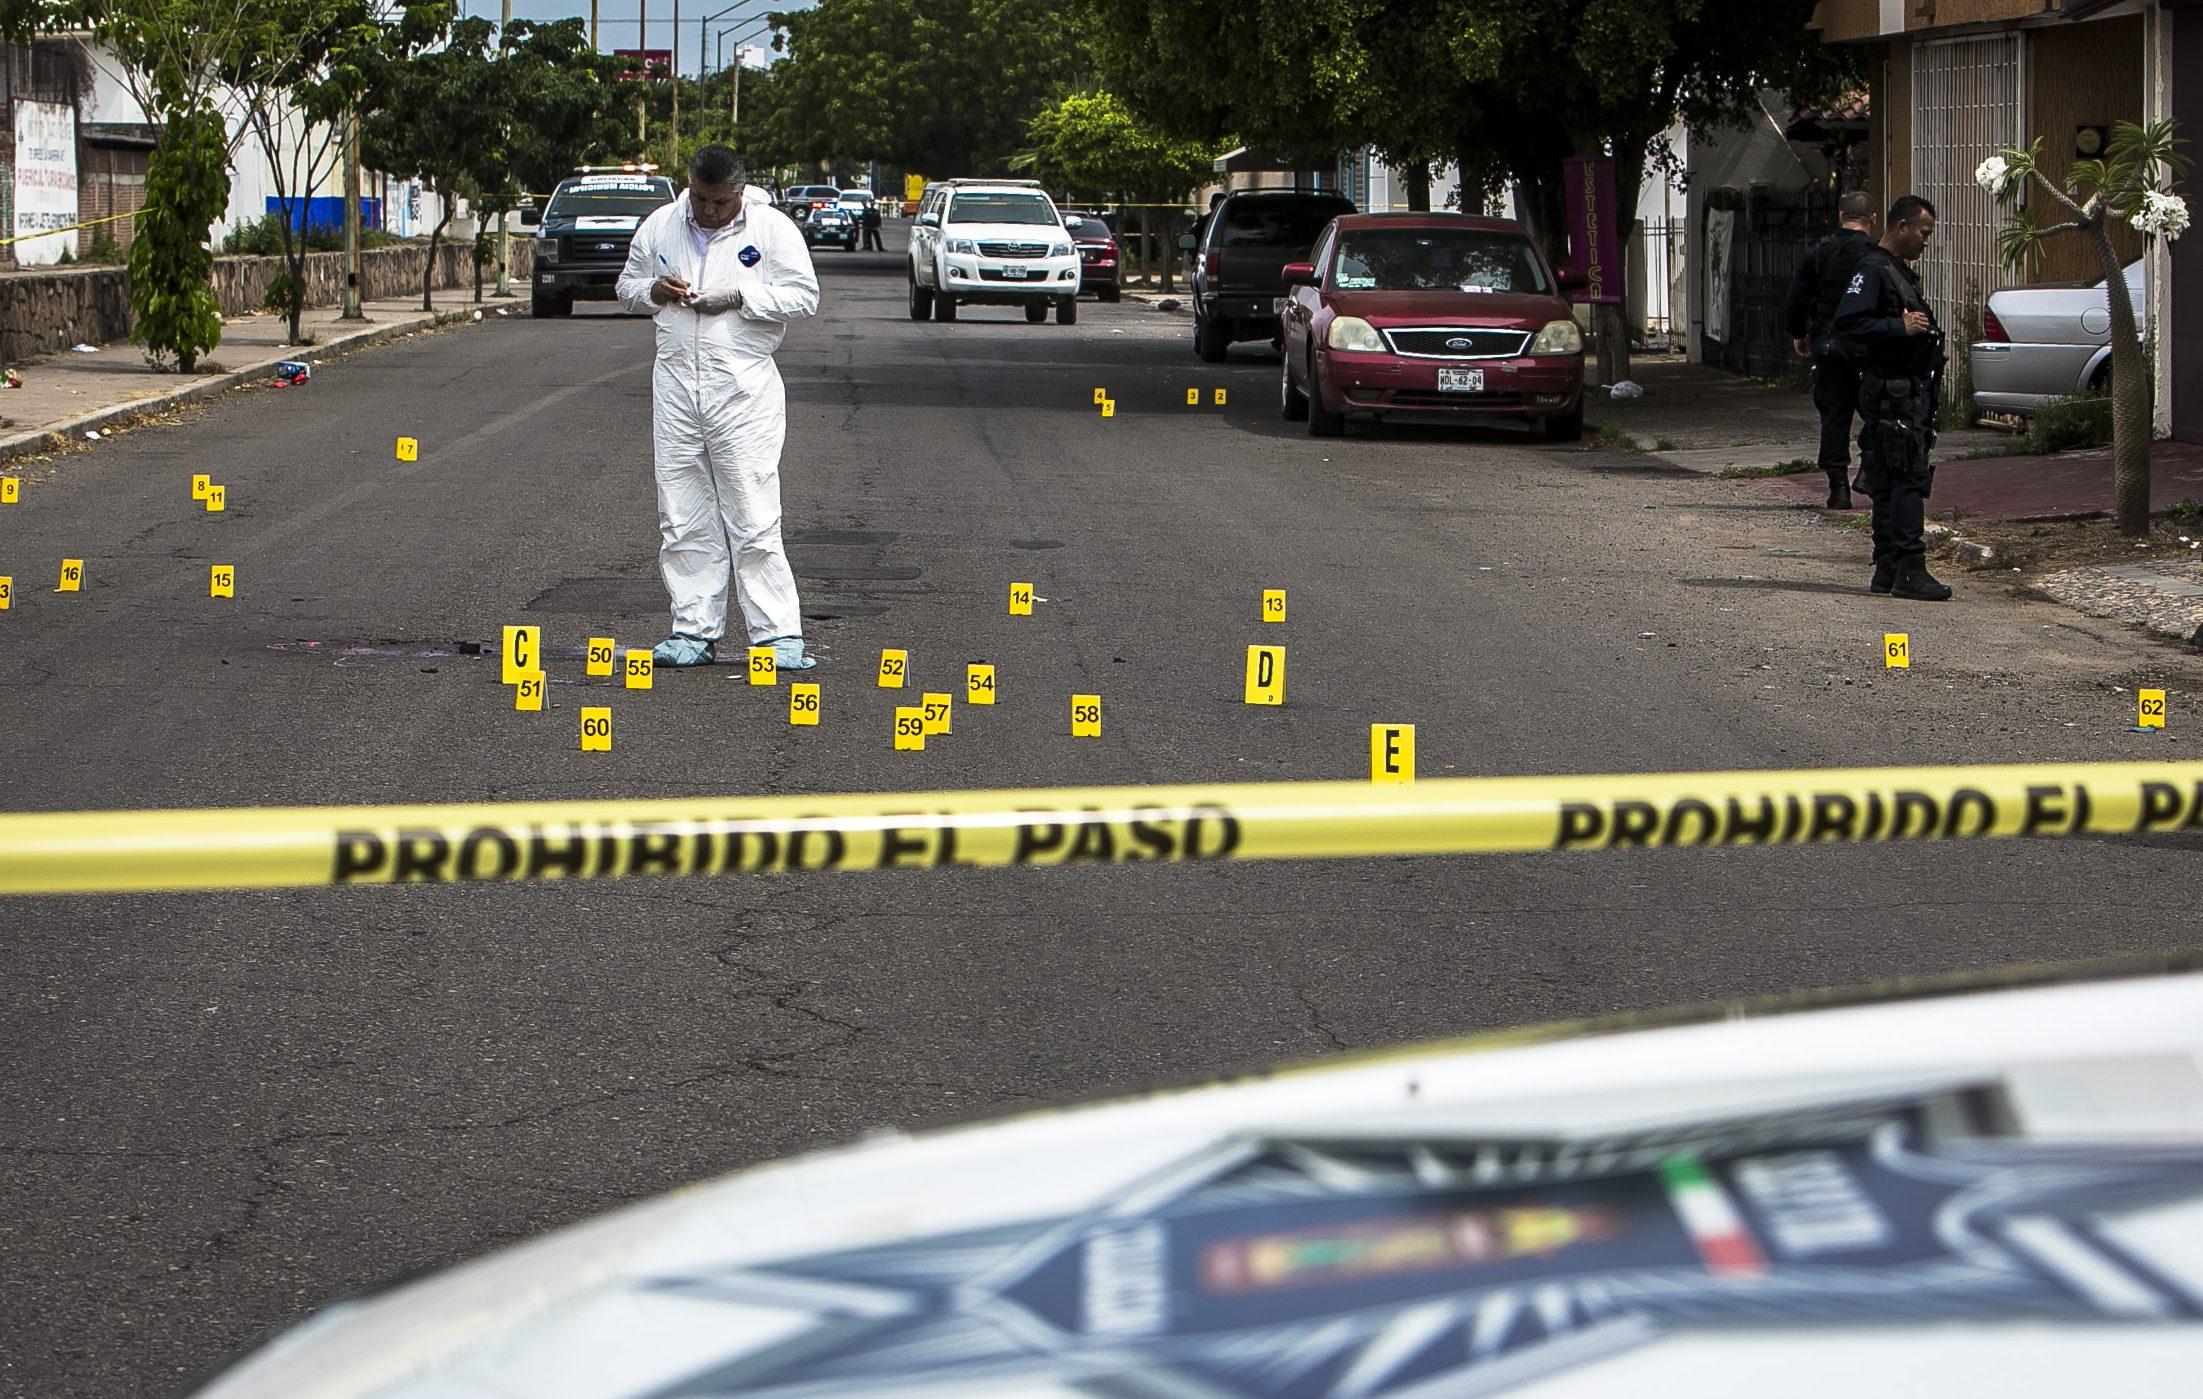 Aunque disparó en defensa propia, un hombre cumple 5 años de proceso penal en Sonora